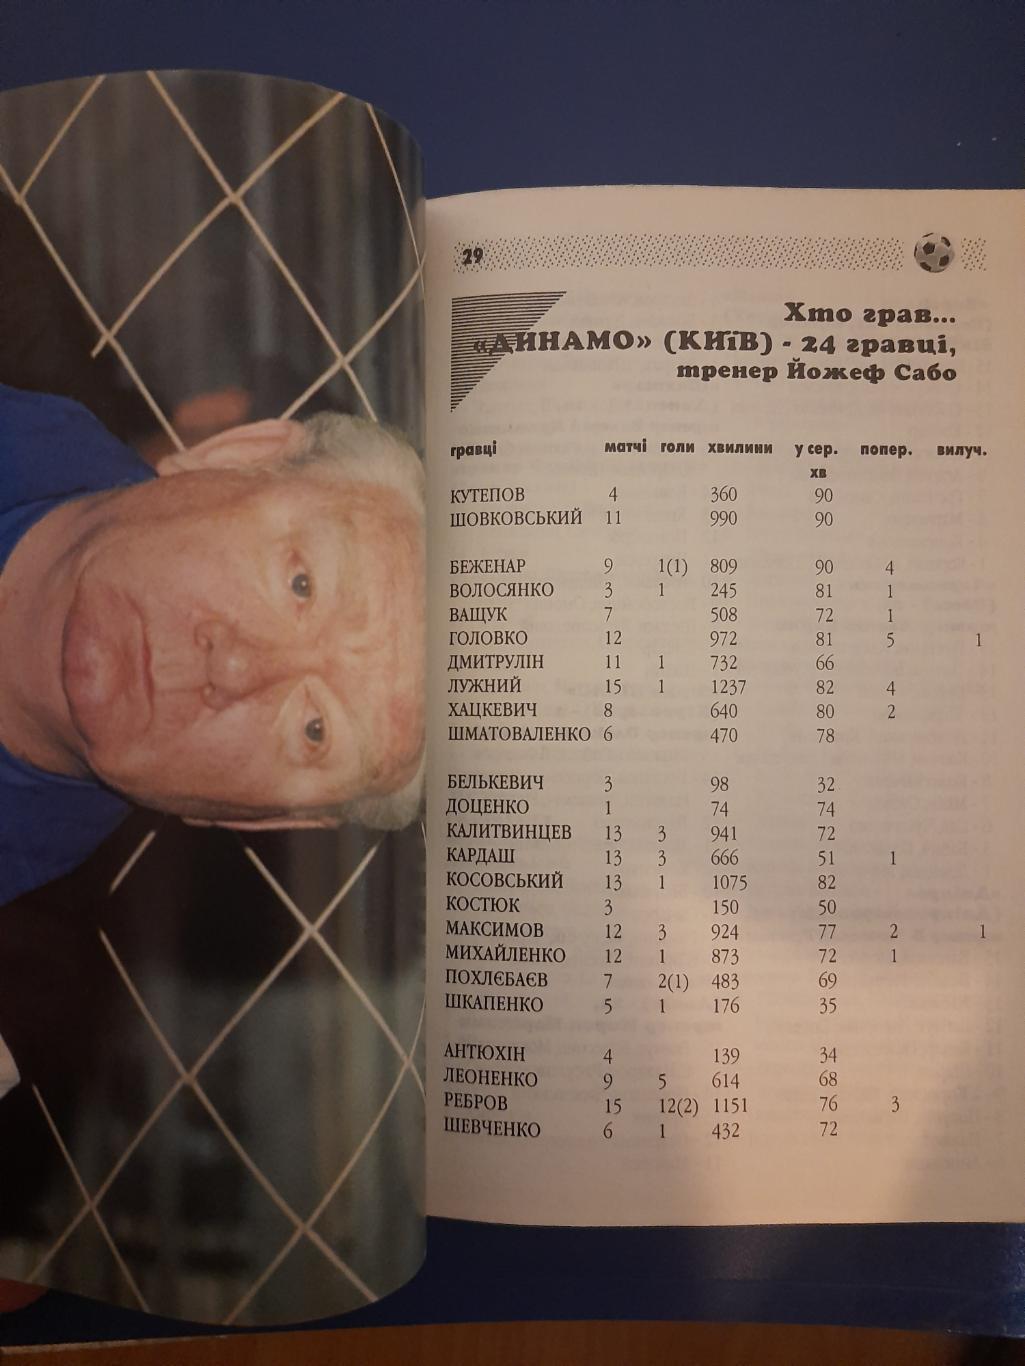 календарь-справочник,Футбол 1996/97, Киев. 2